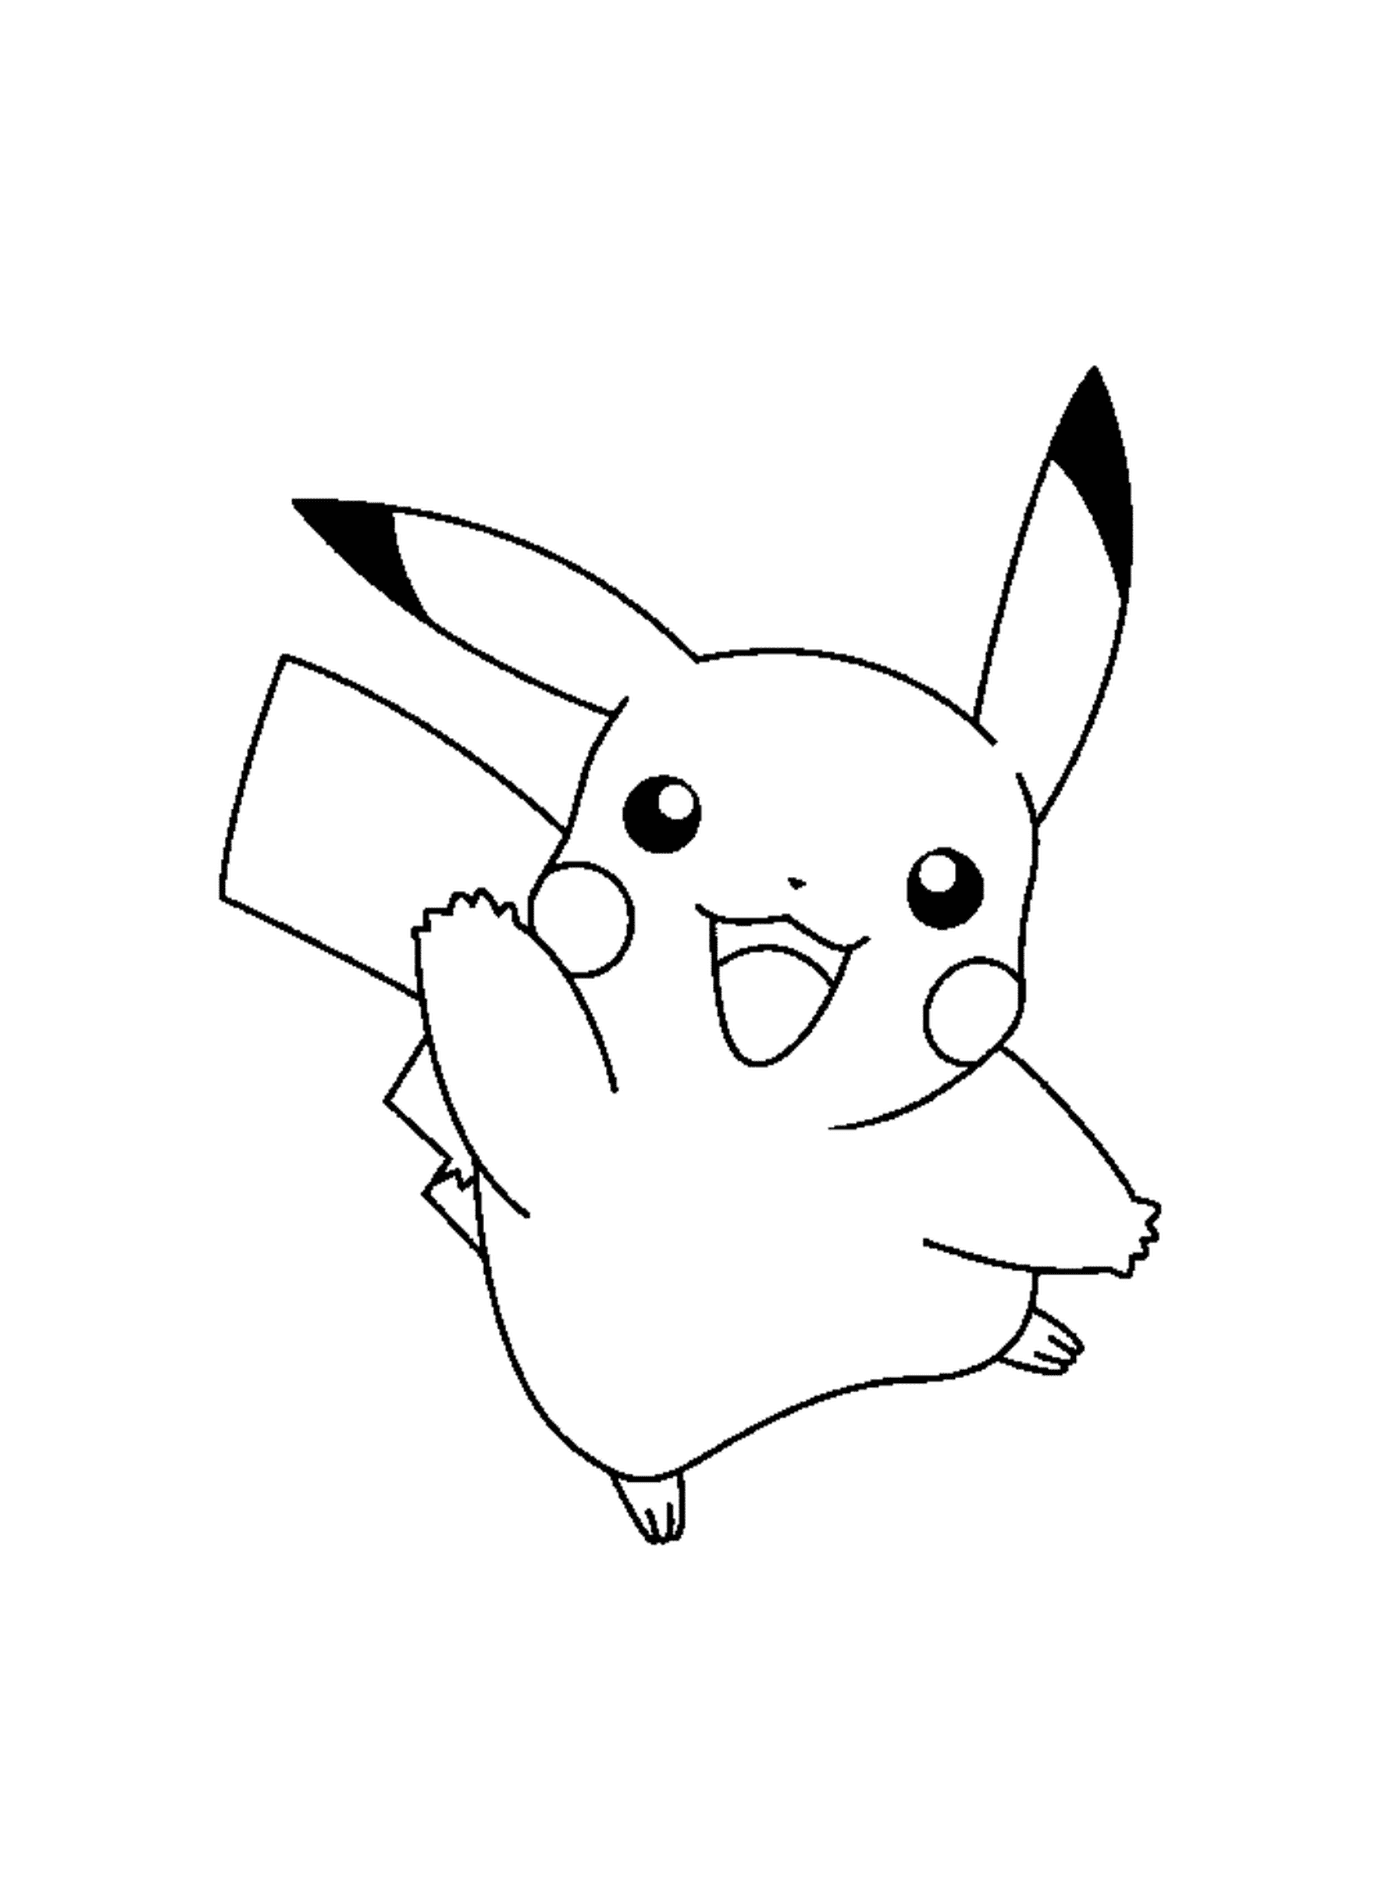   Pikachu heureux et énergique 